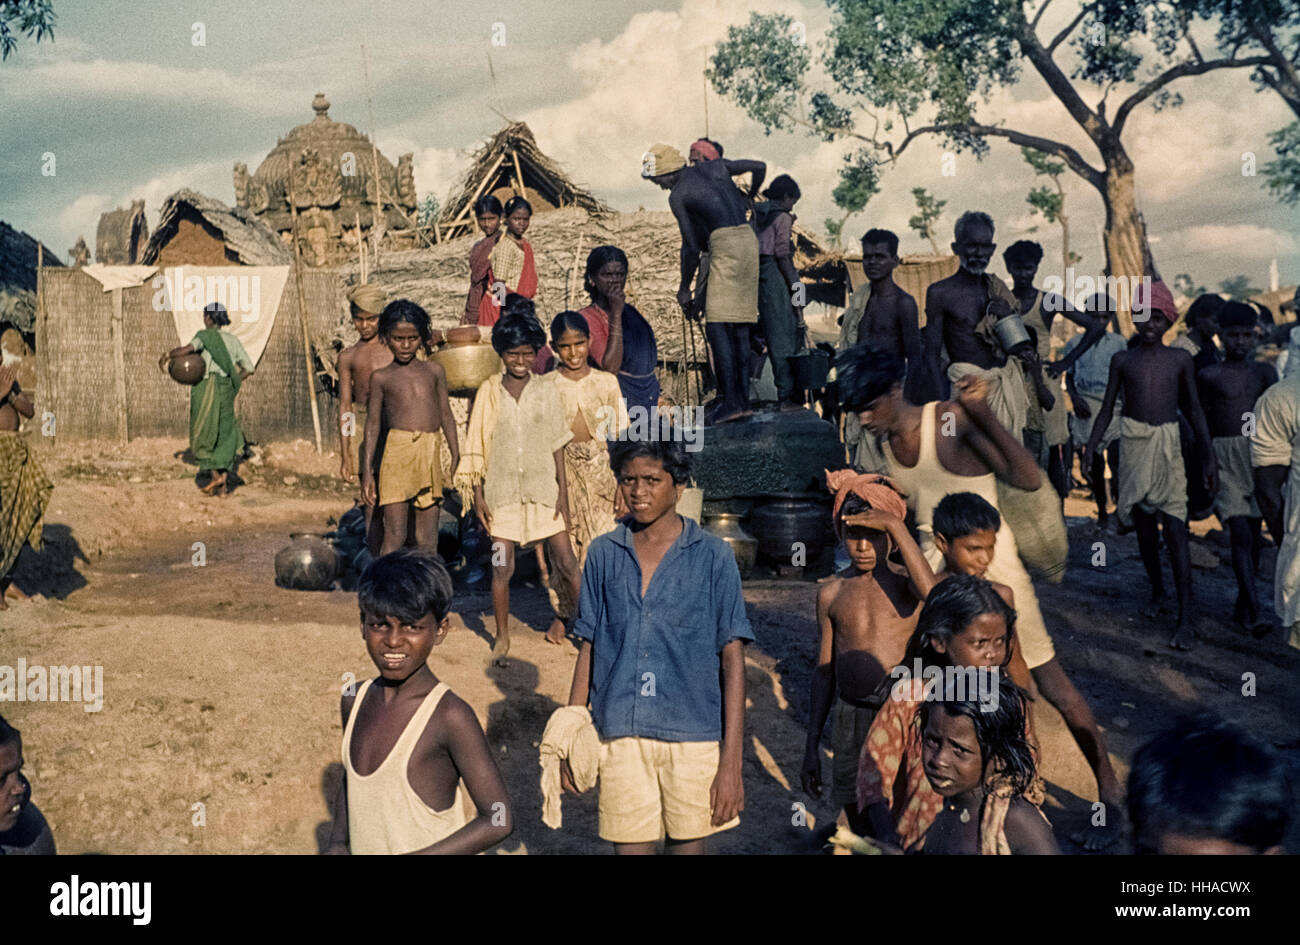 Am Dorfbrunnen Markt a Nähe von Neyveli, Tamil Nadu, 1962. A Neyveli entstand eine Fabrik mit Mitteln der Entwicklungshilfe. Foto Stock